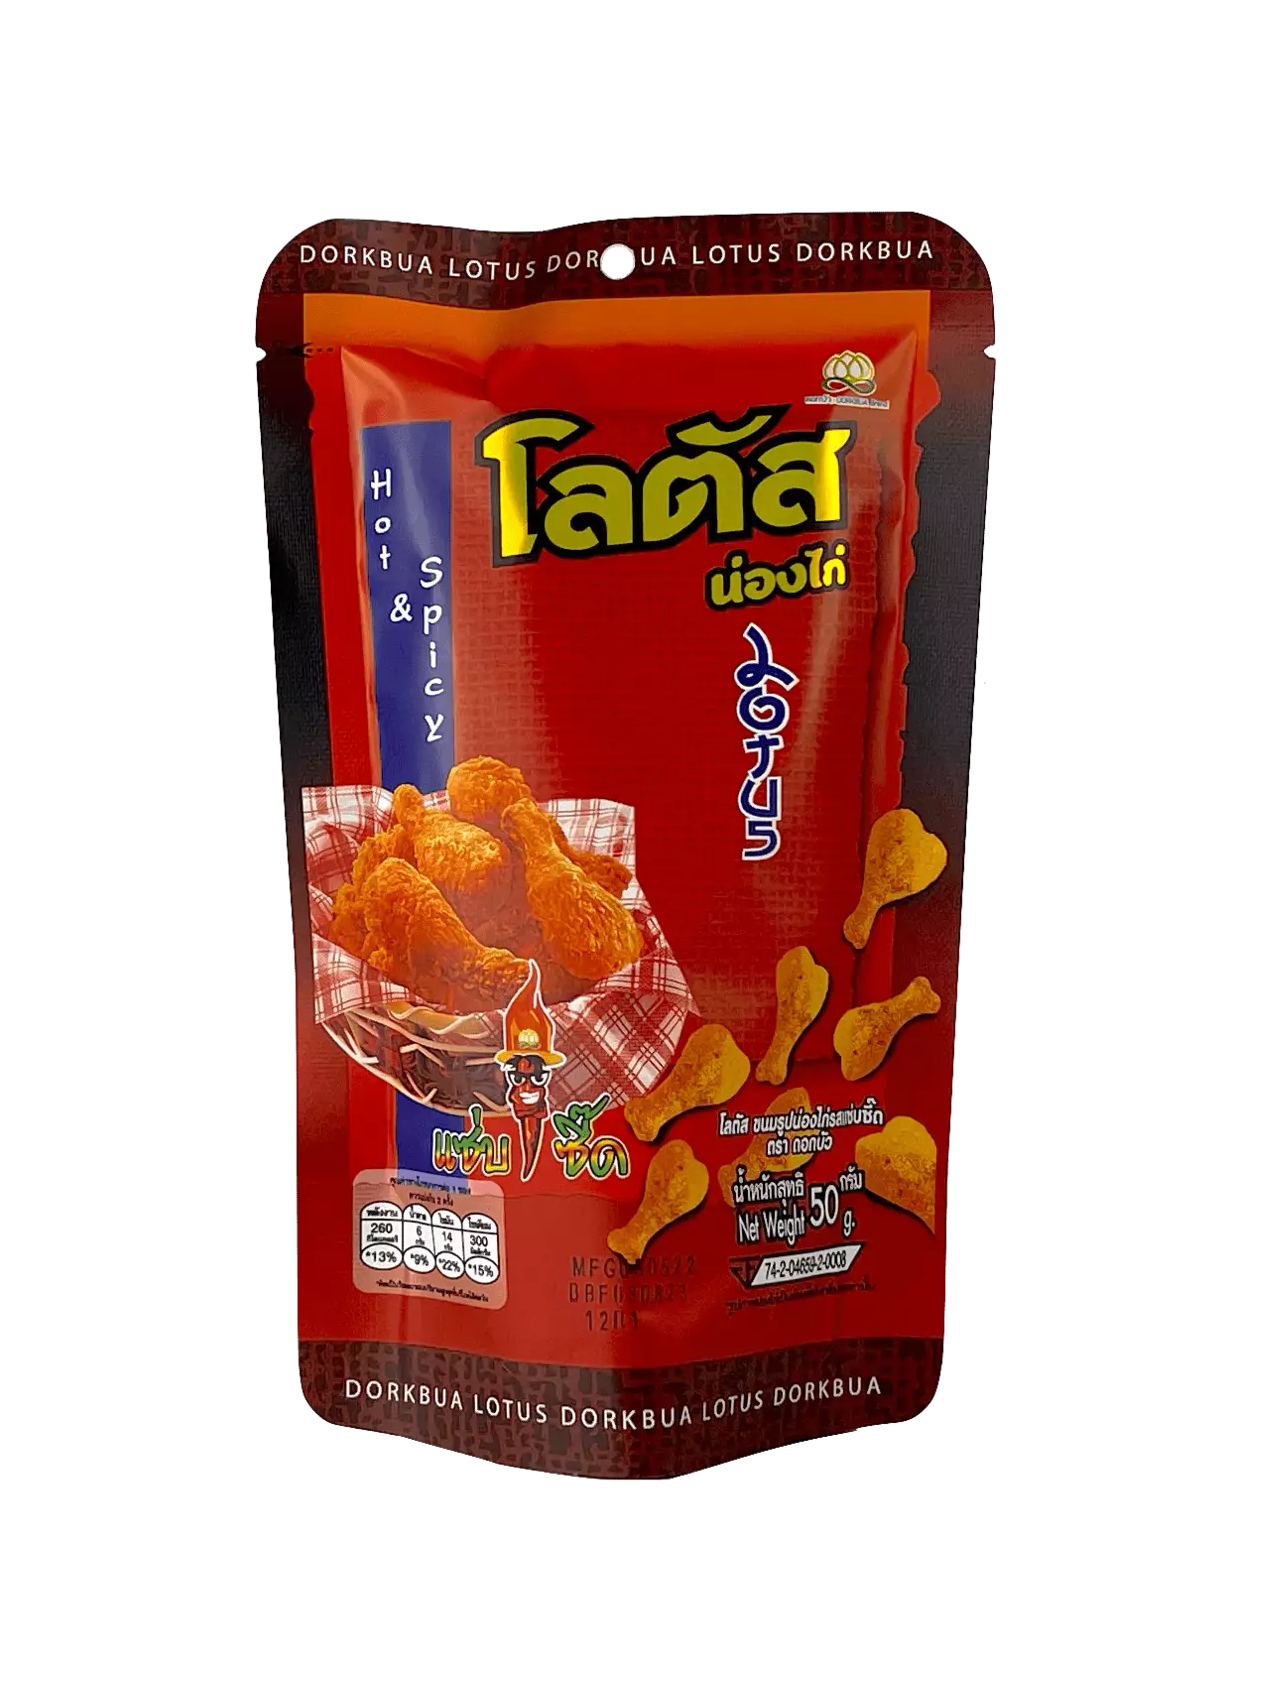  Biscuit Stick Hot/Spicy Smak 110g Dorkbua Thailand